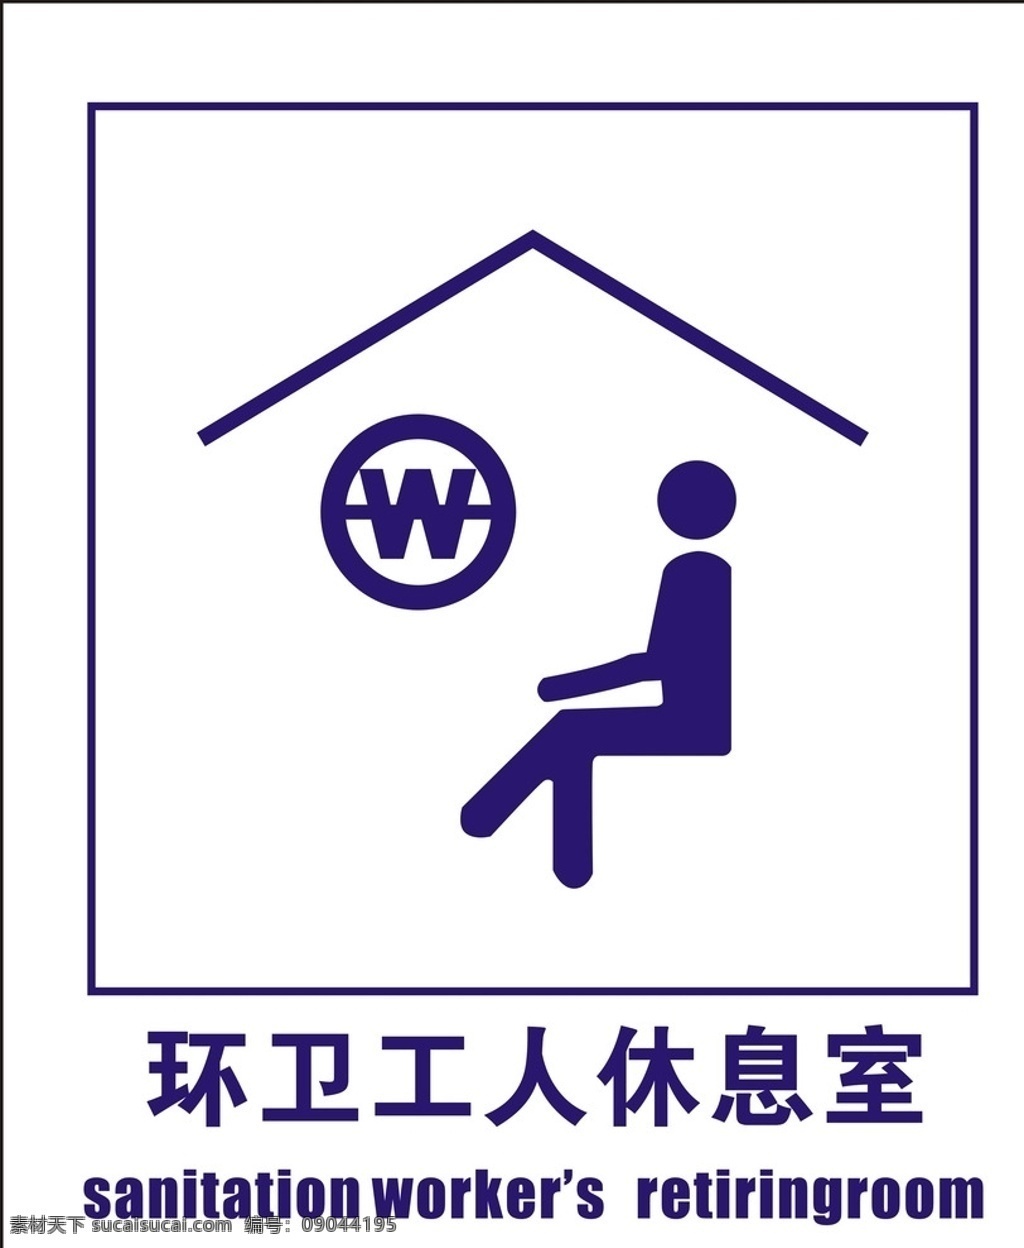 环卫 工人 休息室 标志 环卫工人标志 环卫标志 厕所标志 公共标志 环卫工人标识 标志图标 公共标识标志